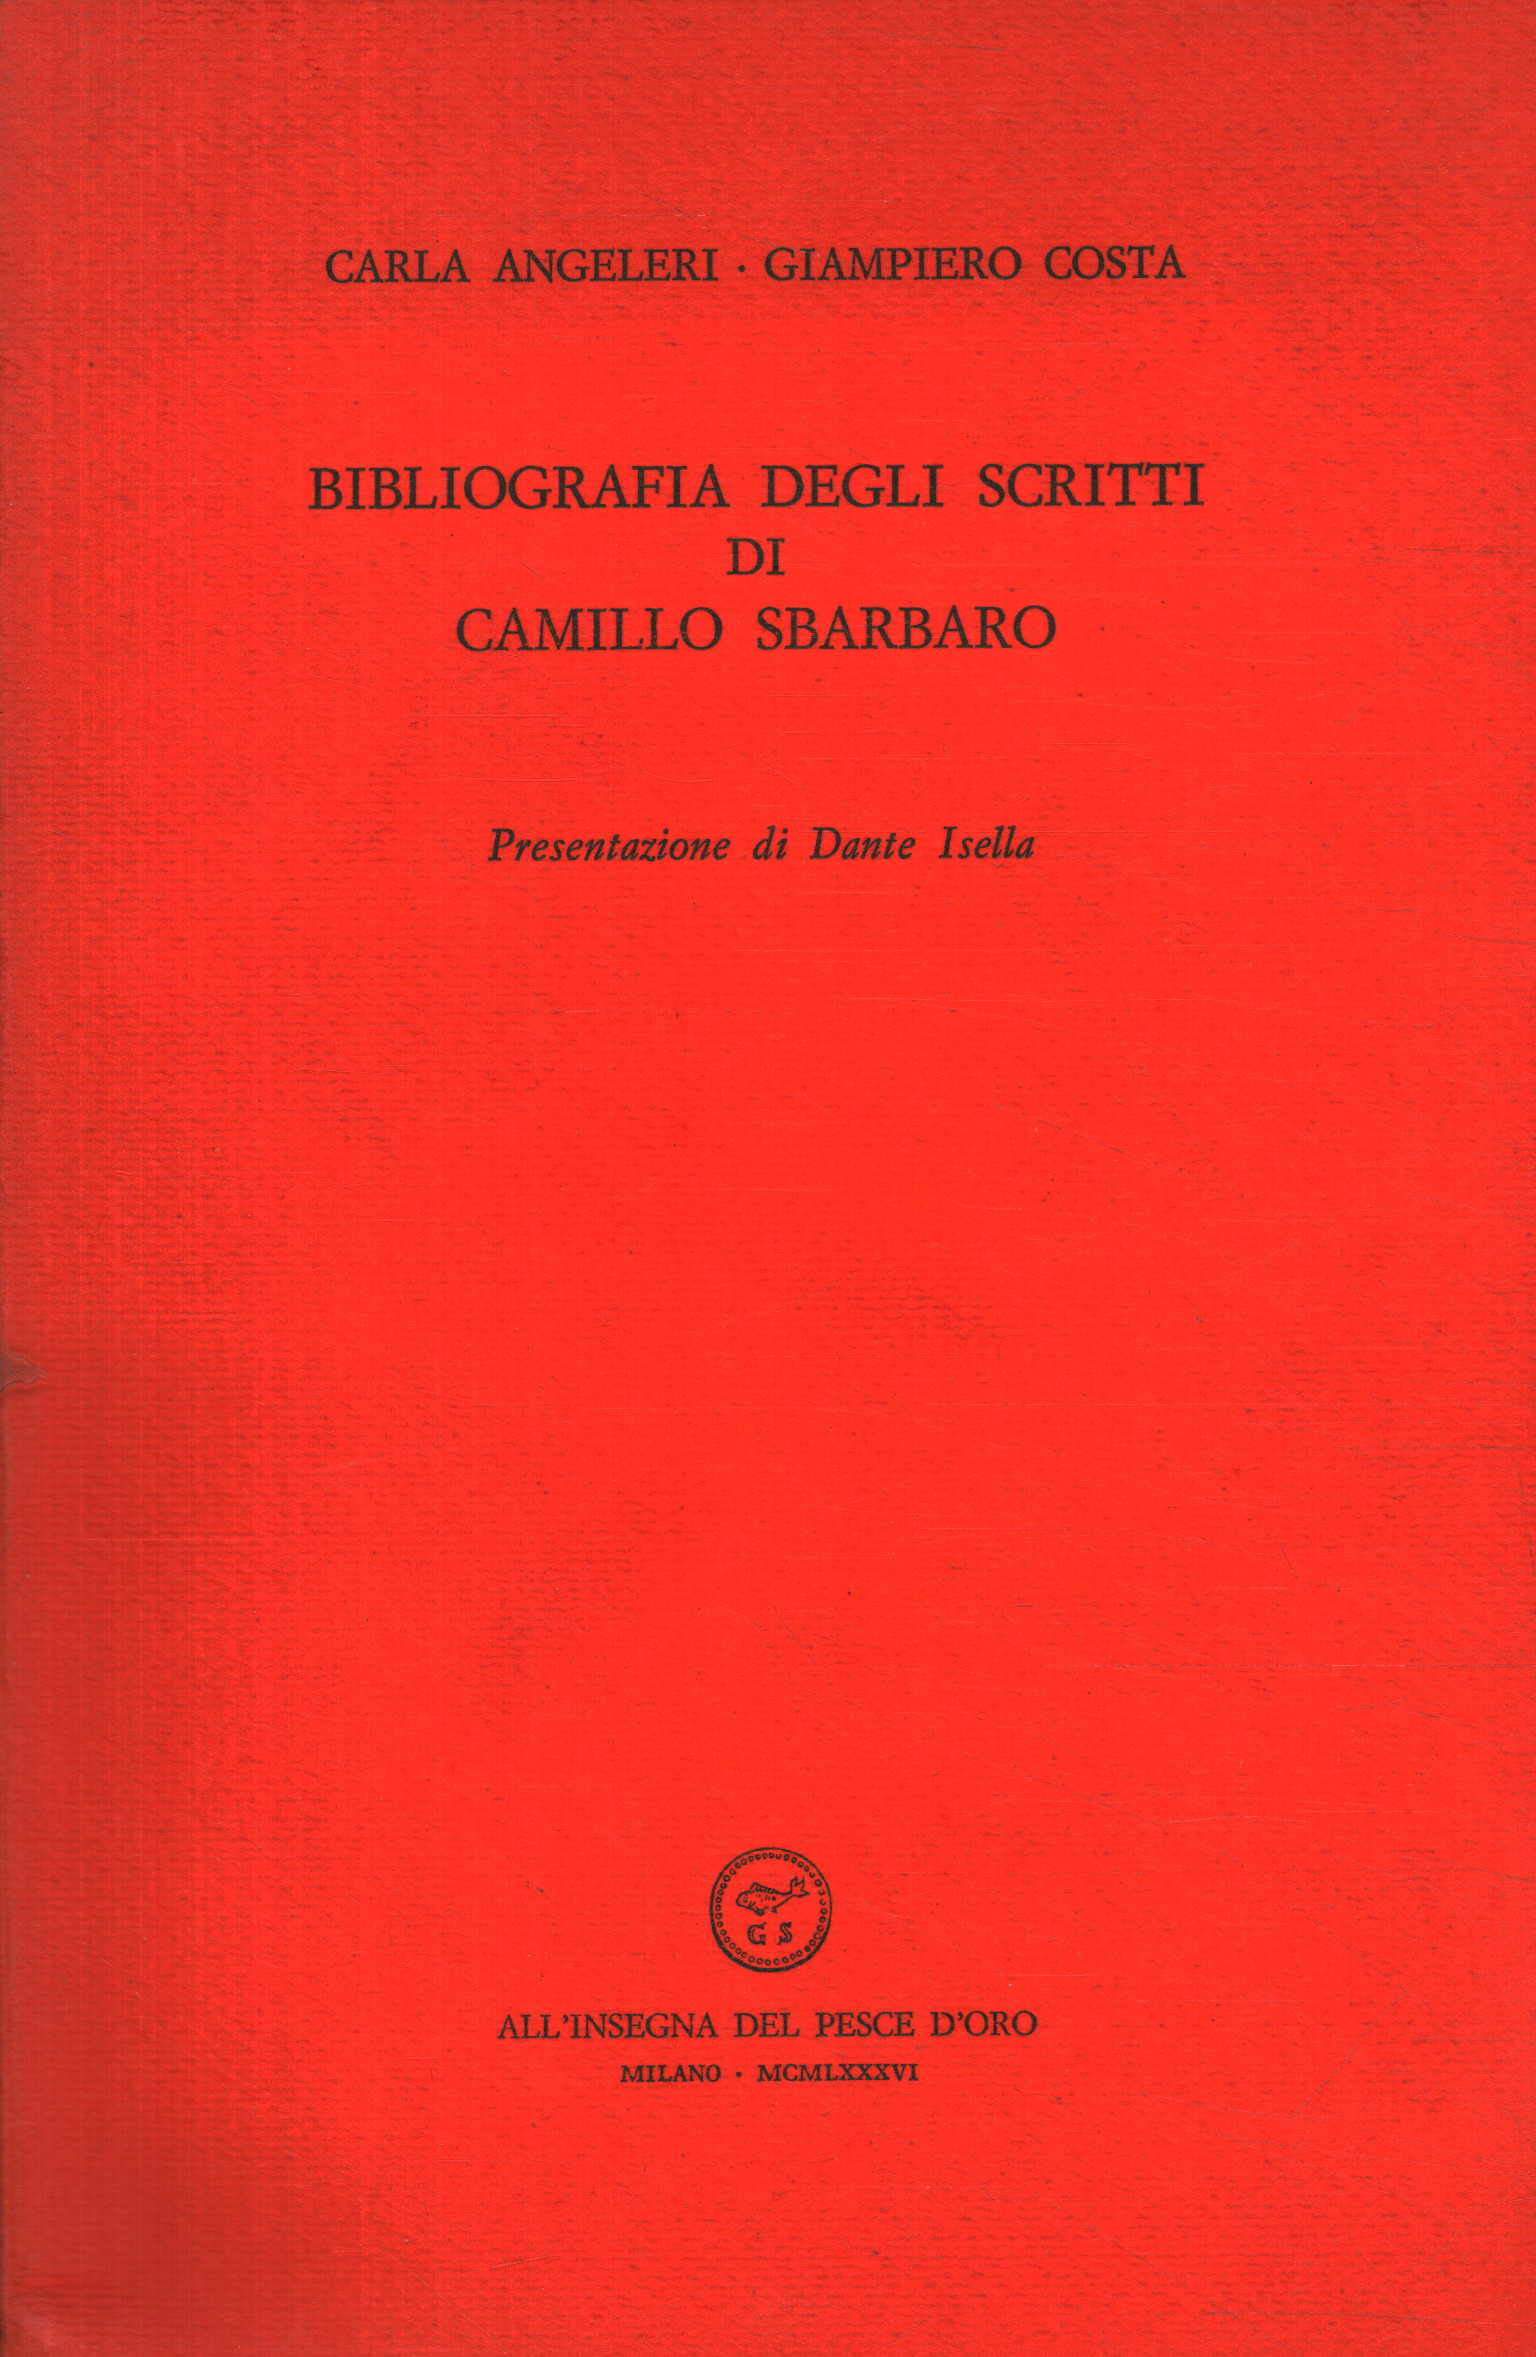 Bibliografia degli scritti di Camillo Sb